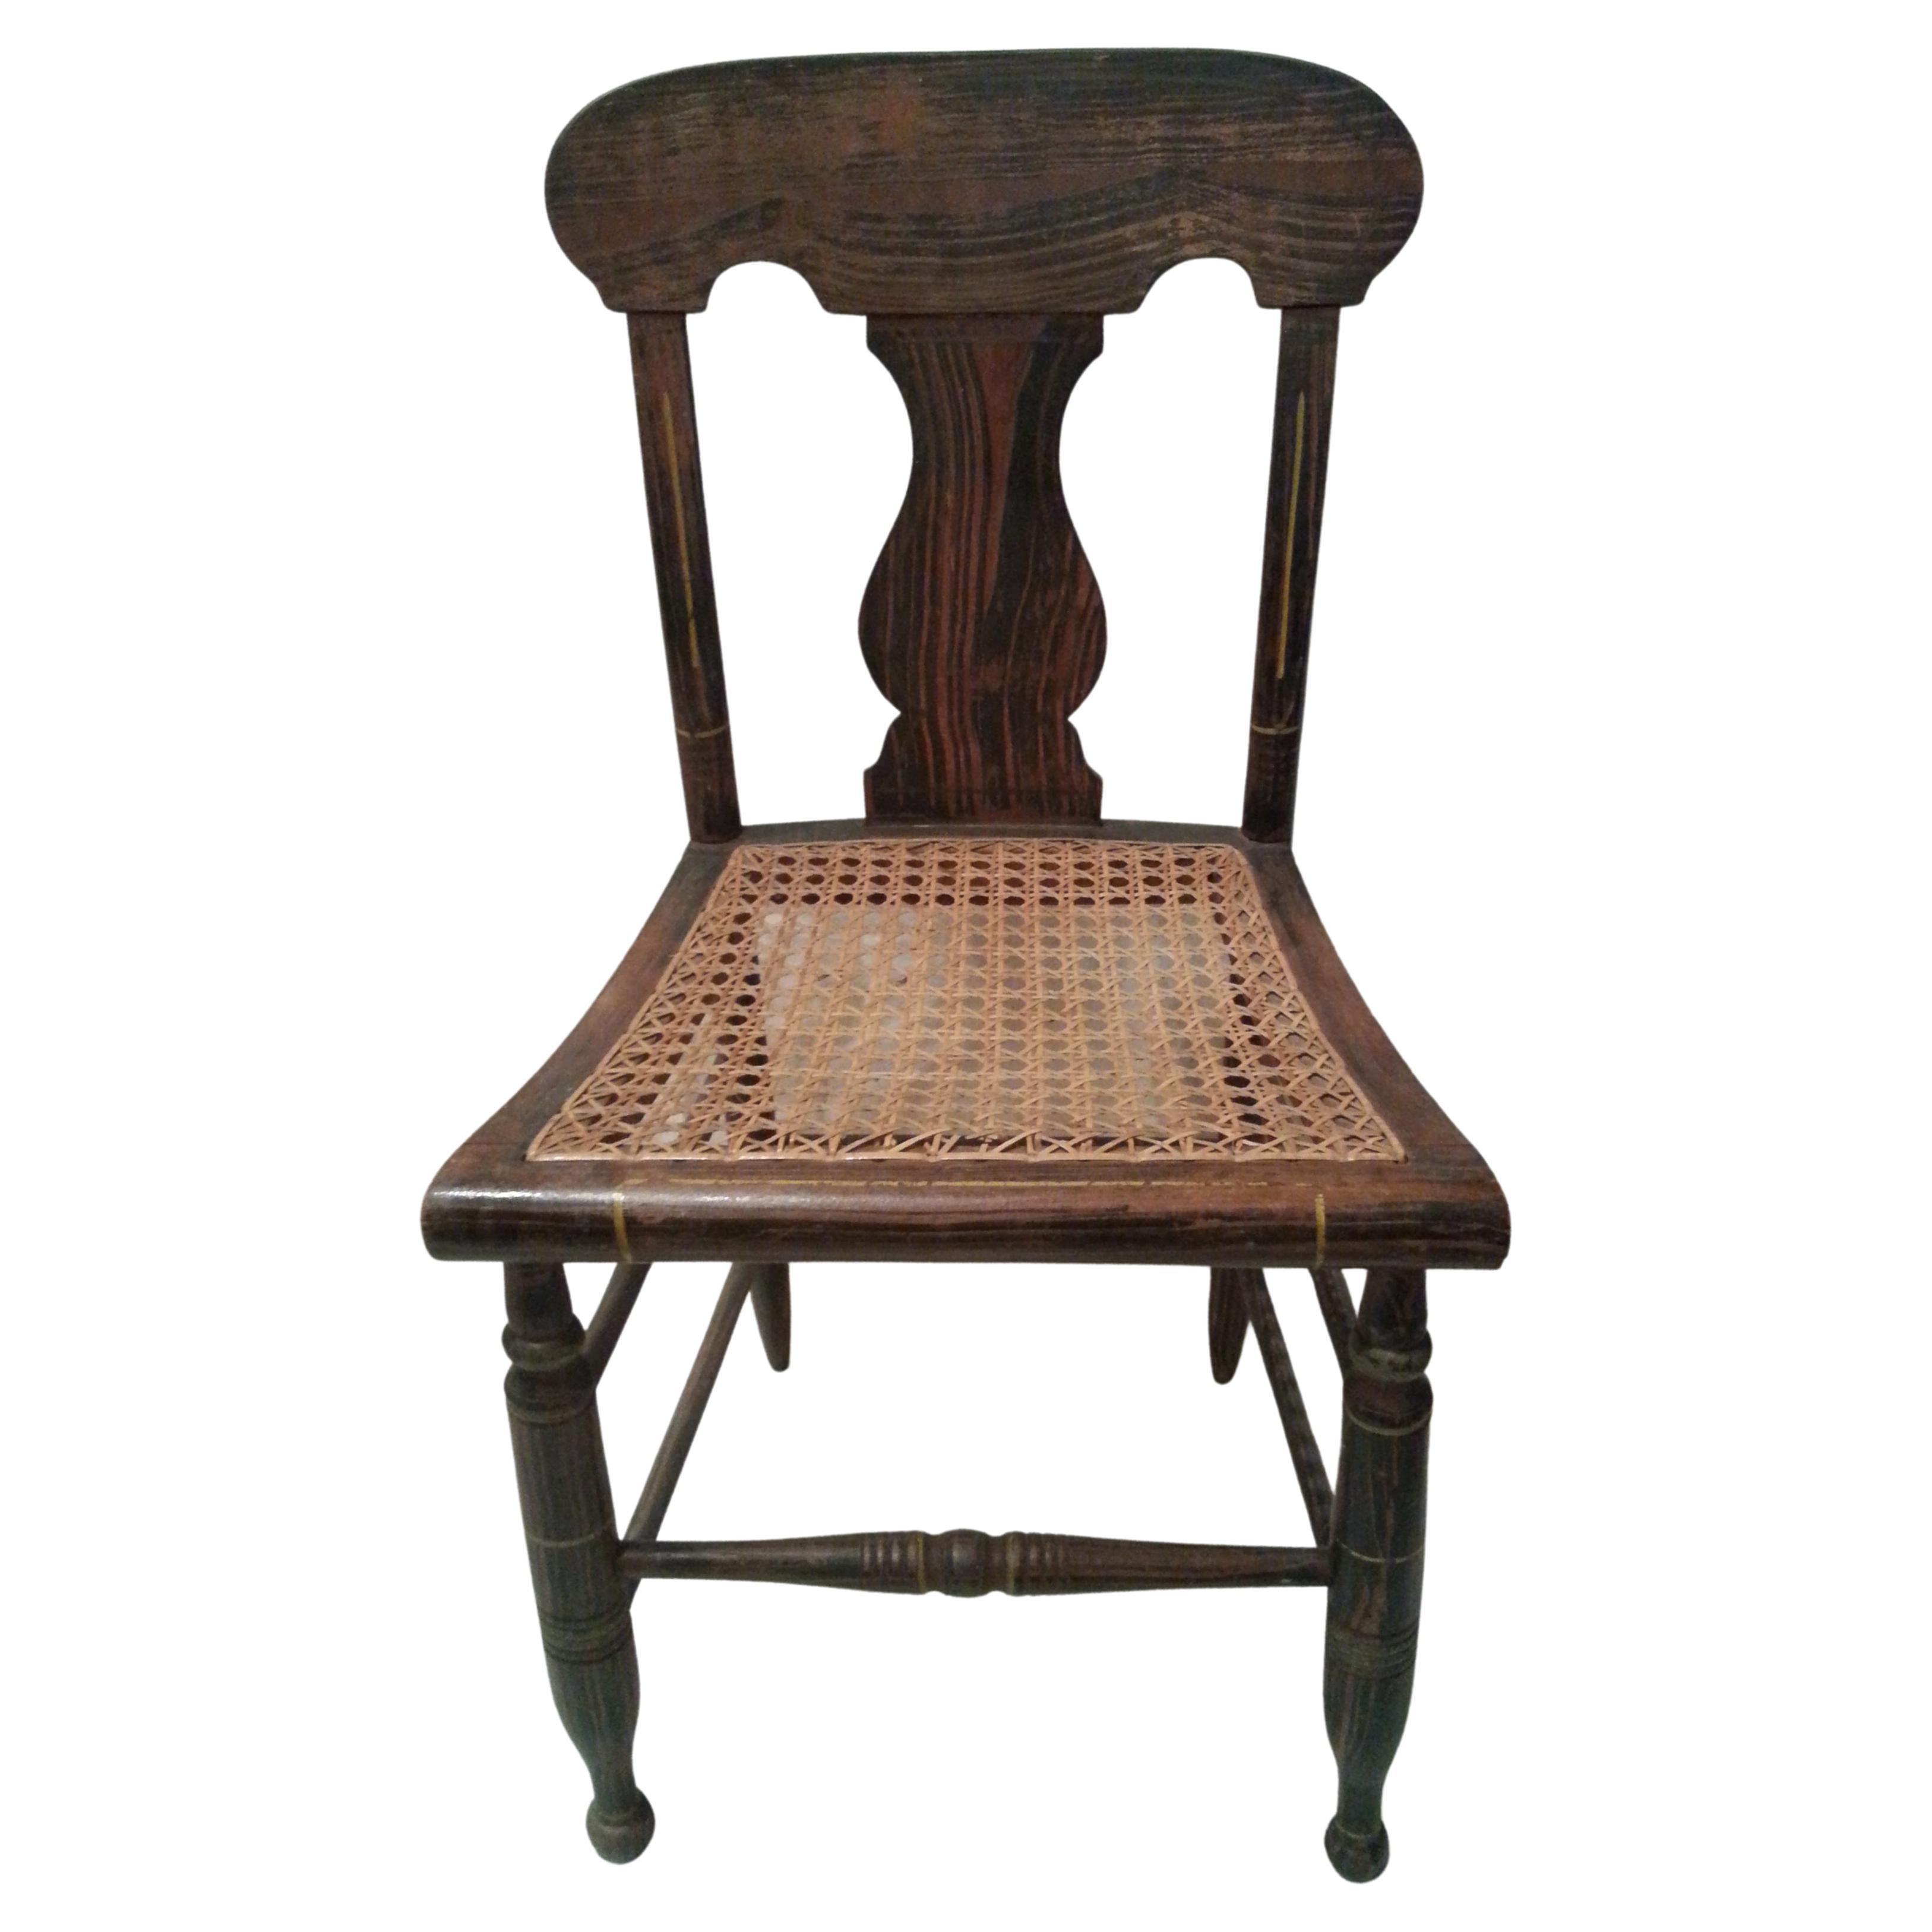 Beistellstuhl mit Rohrstühle und Schilfrohrsitz, 19. Jahrhundert